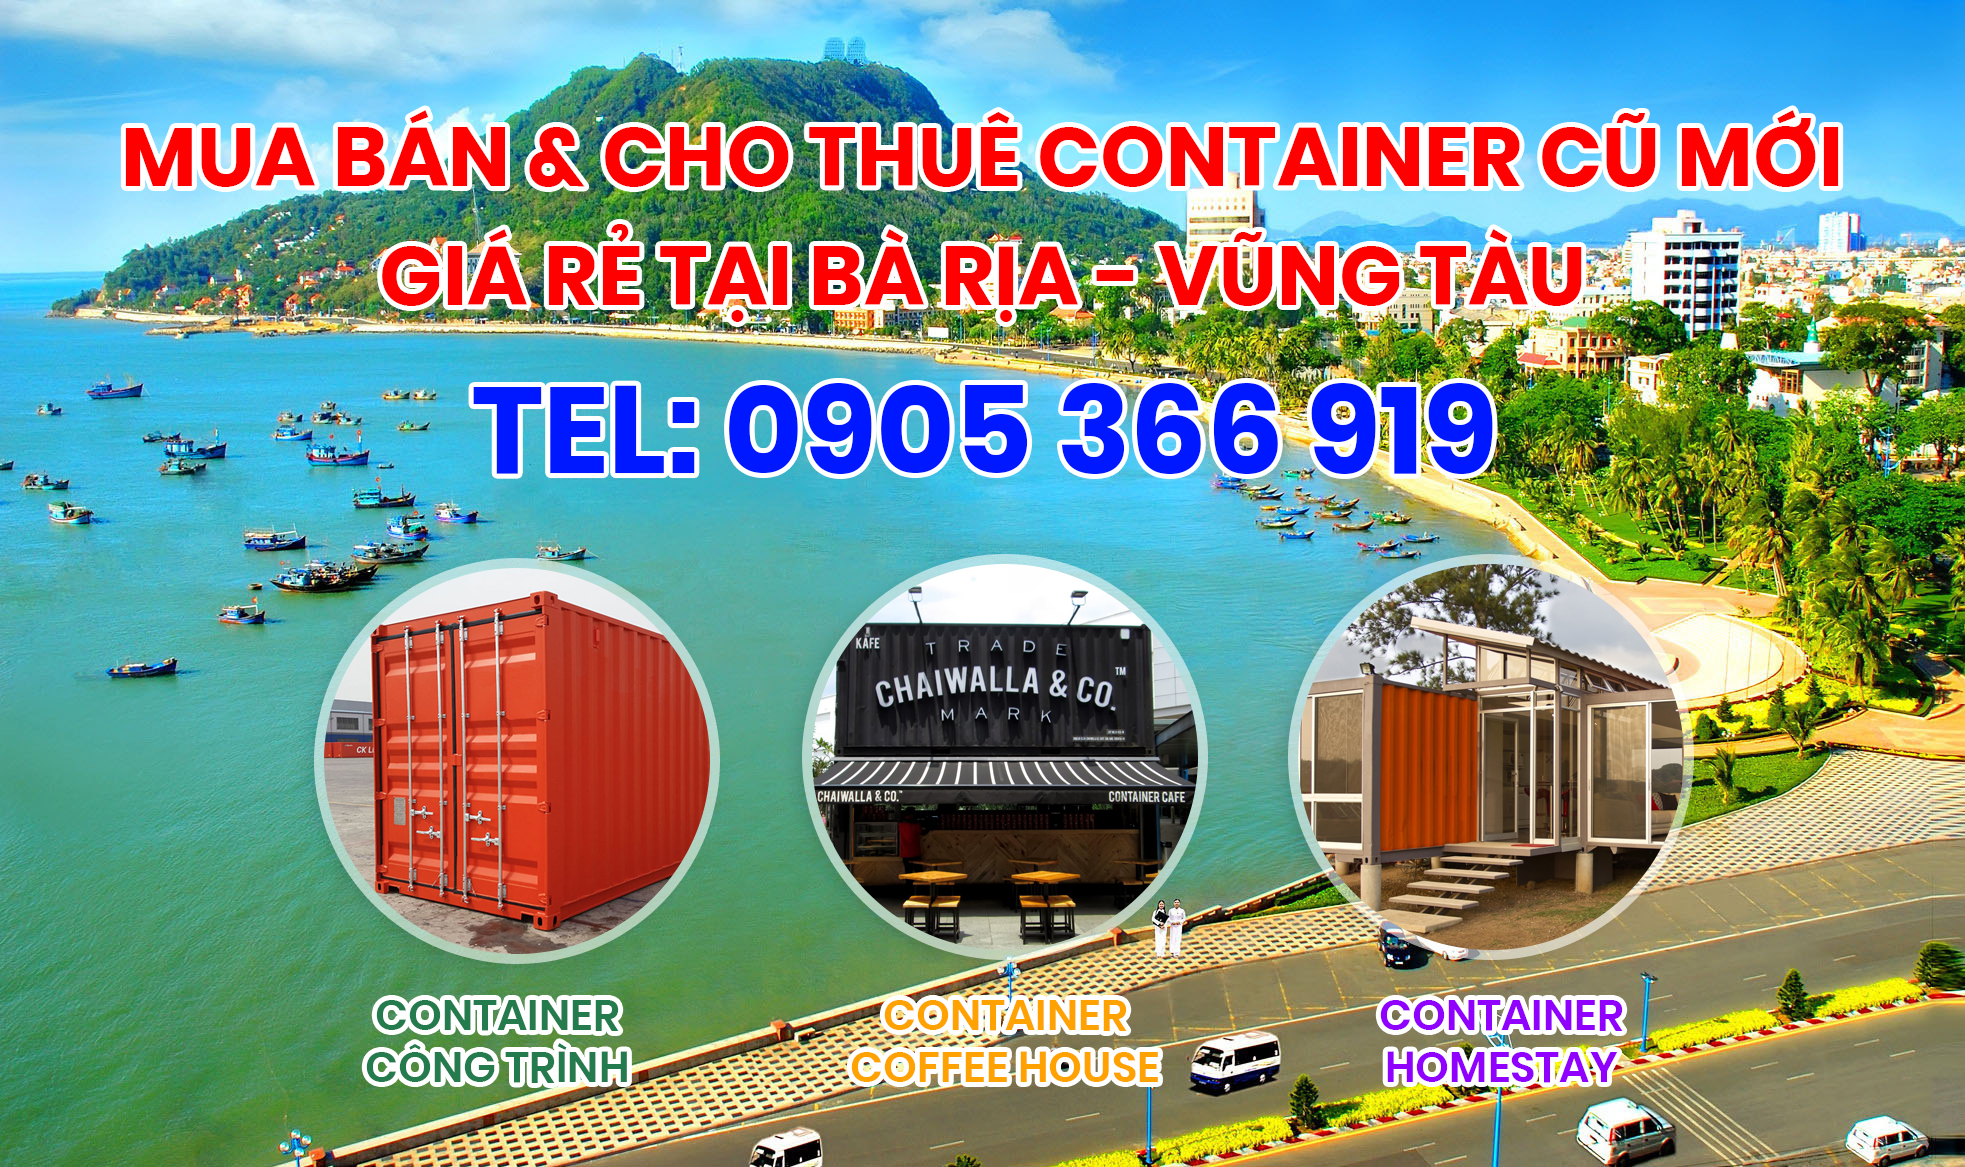 Mua bán và cho thuê container cũ mới giá rẻ tại Bà Rịa - Vũng Tàu